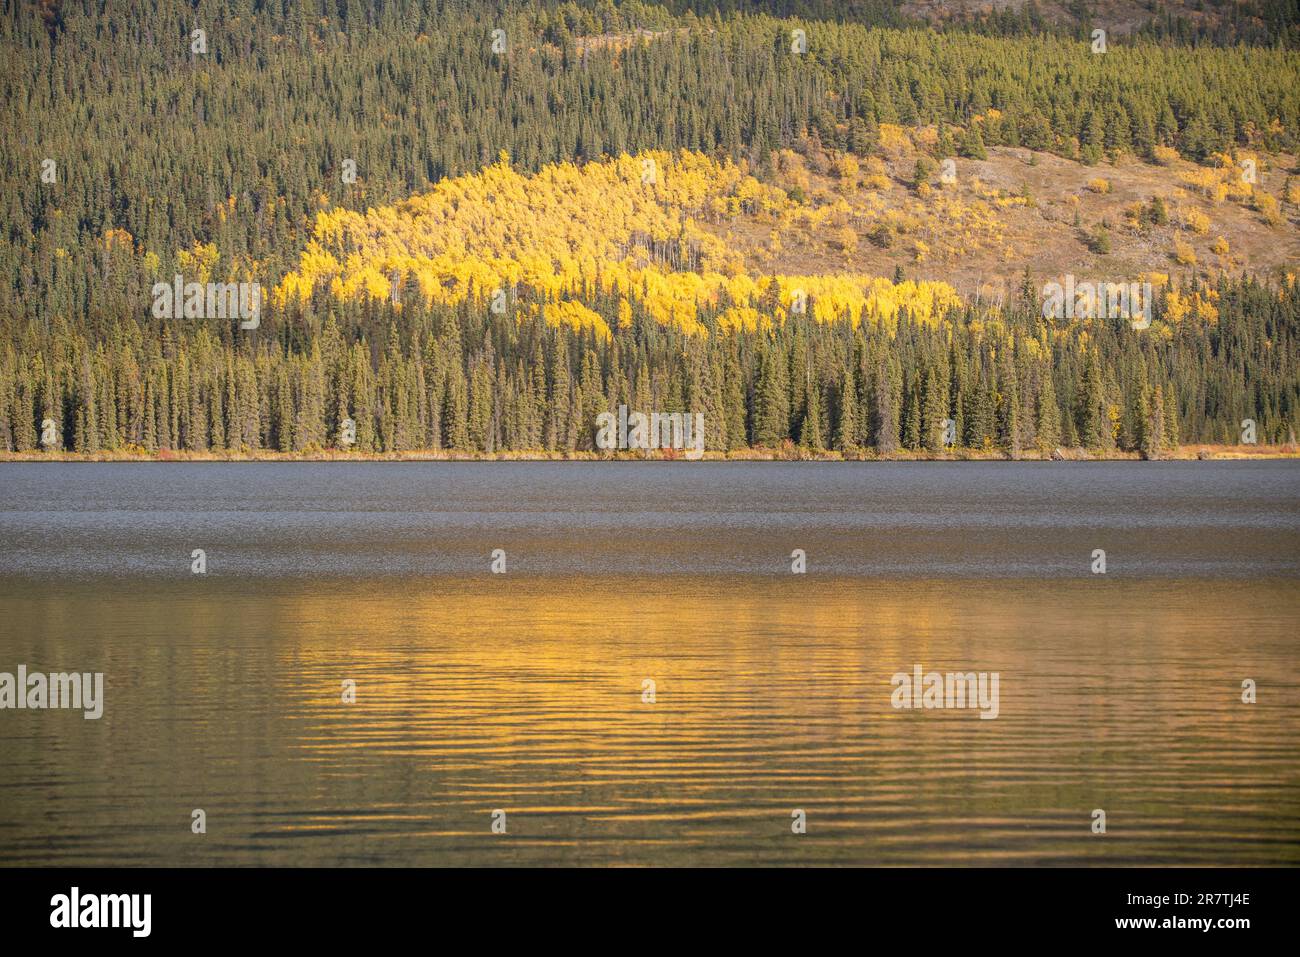 Réflexion, nature photographiée dans le nord du Canada, à l'automne, dans les couleurs d'automne les plus vives, avec des montagnes se reflétant dans le lac en dessous.Ciel bleu le jour parfait. Banque D'Images